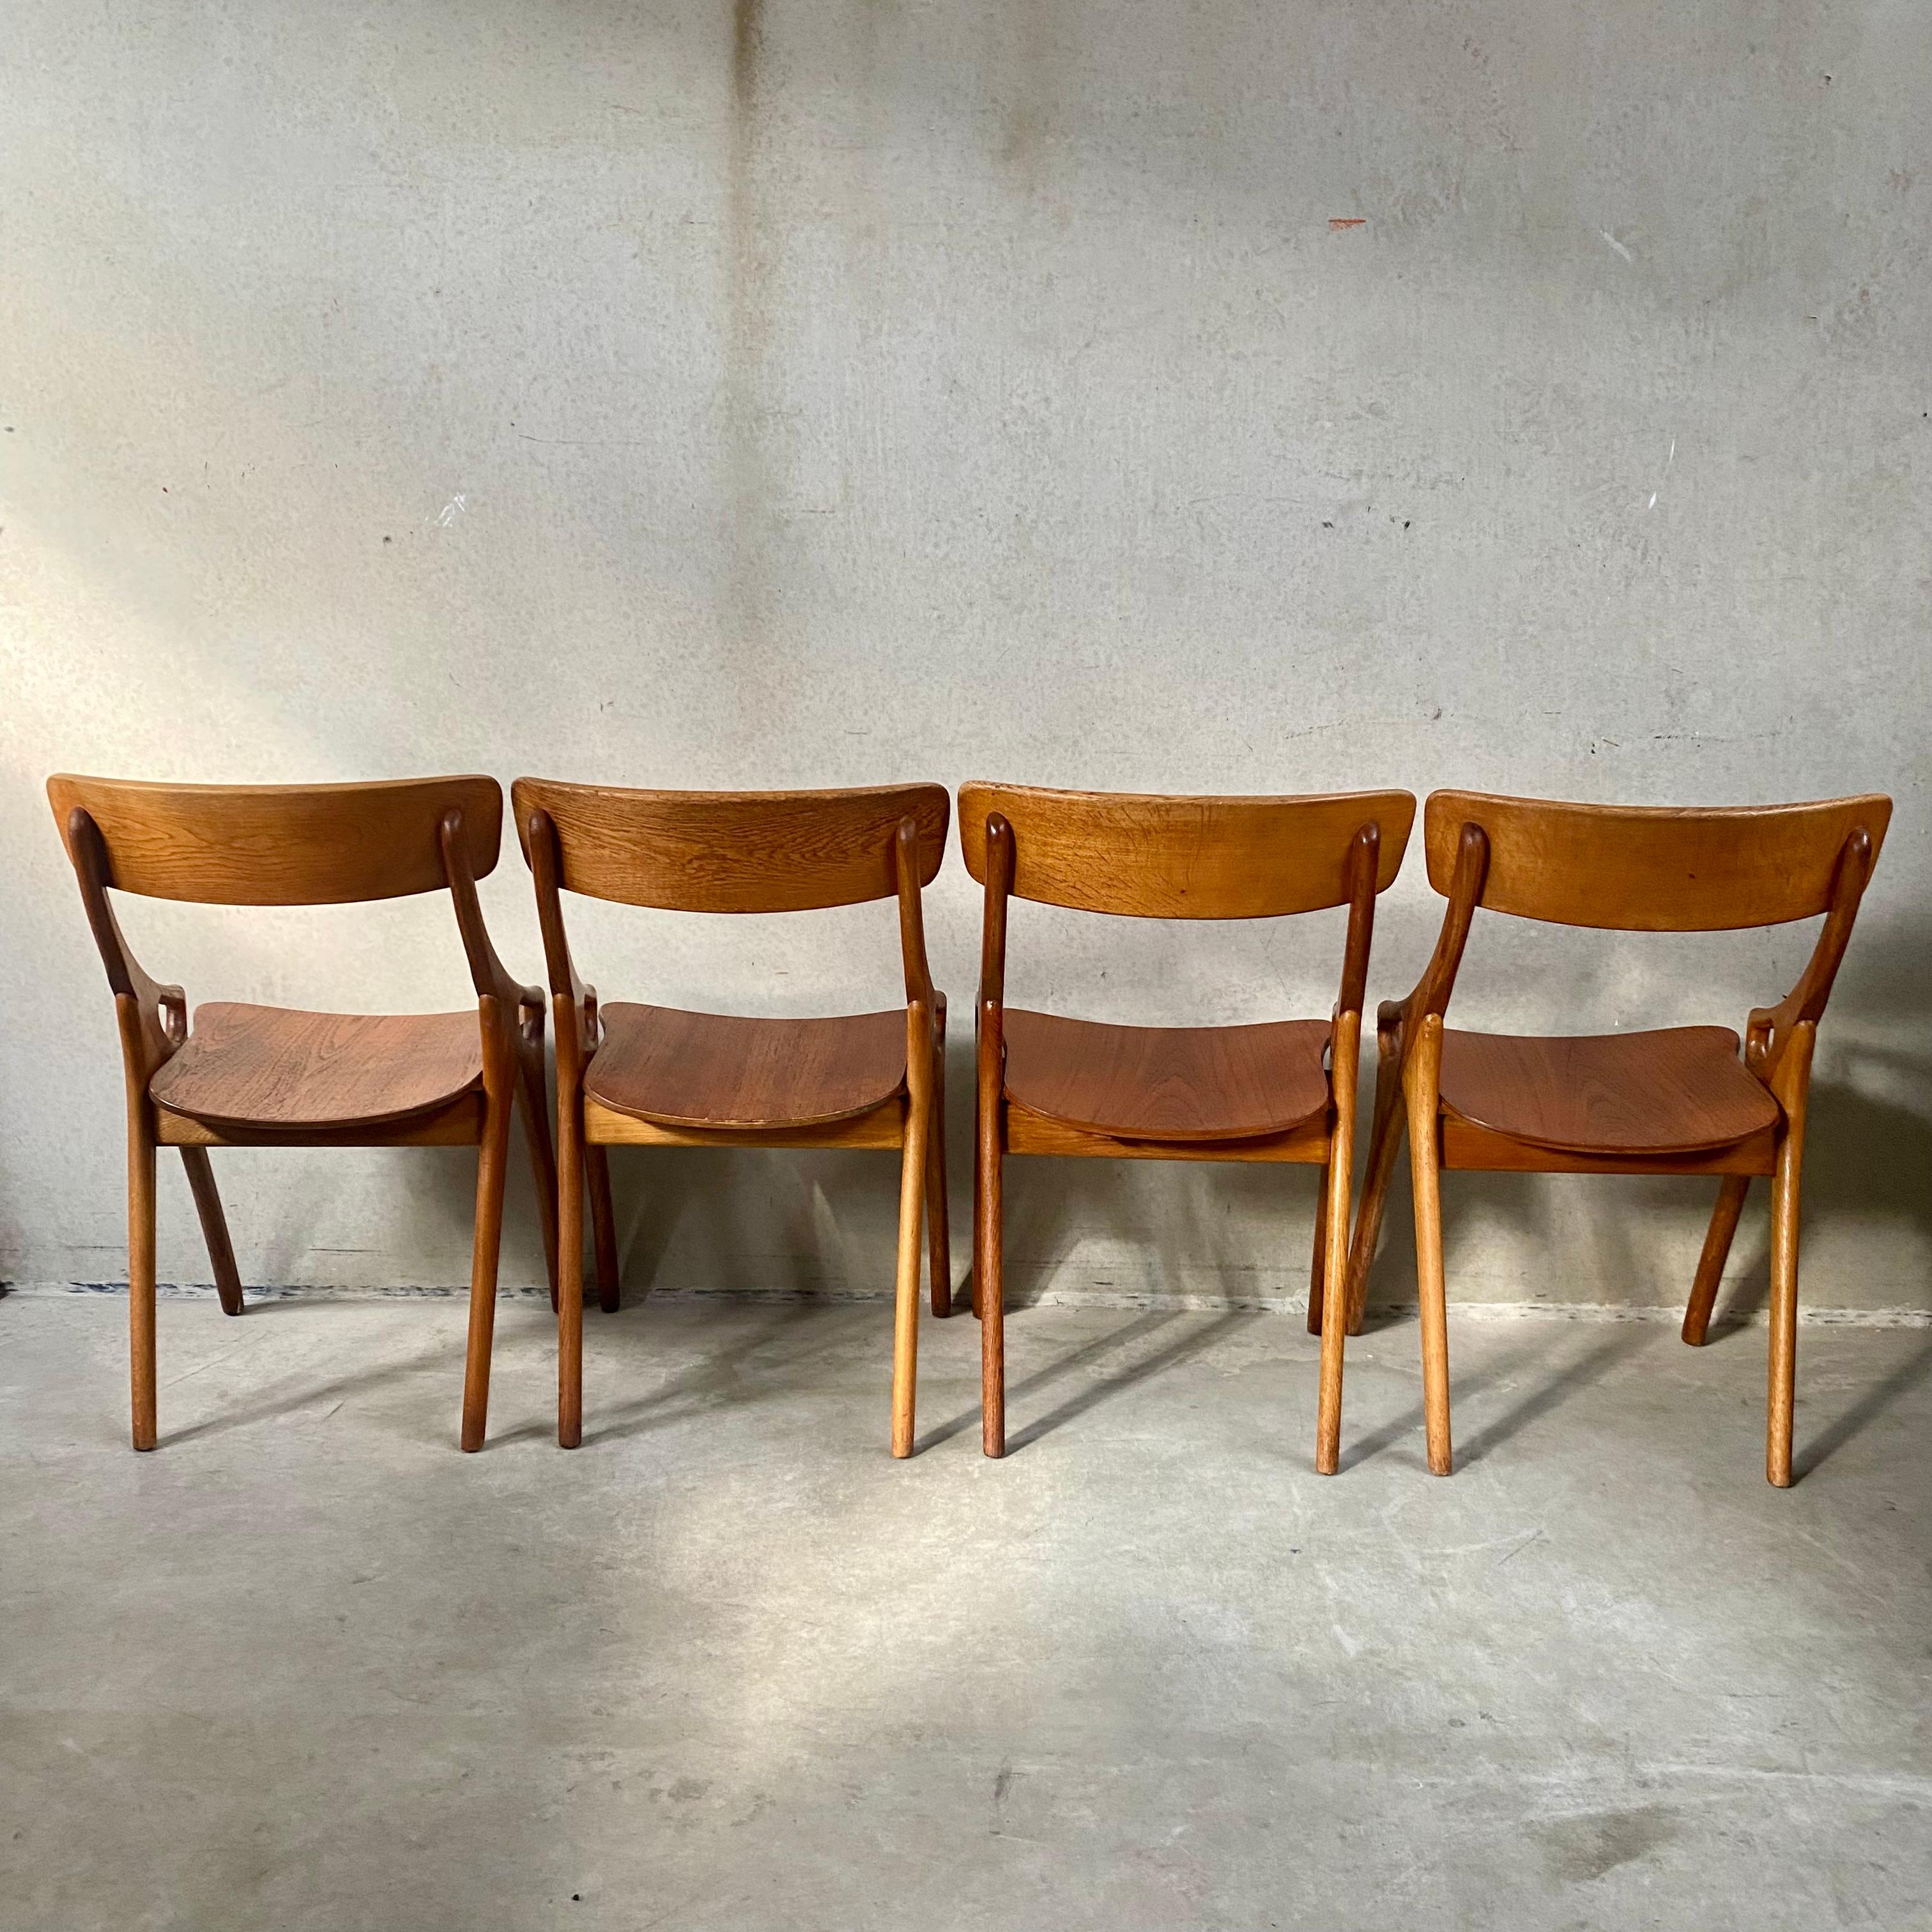 4 Rustic Oak Arne Hovmand Olsen Dining Chairs for Mogens Kold Mobelfabrik 1950 For Sale 3